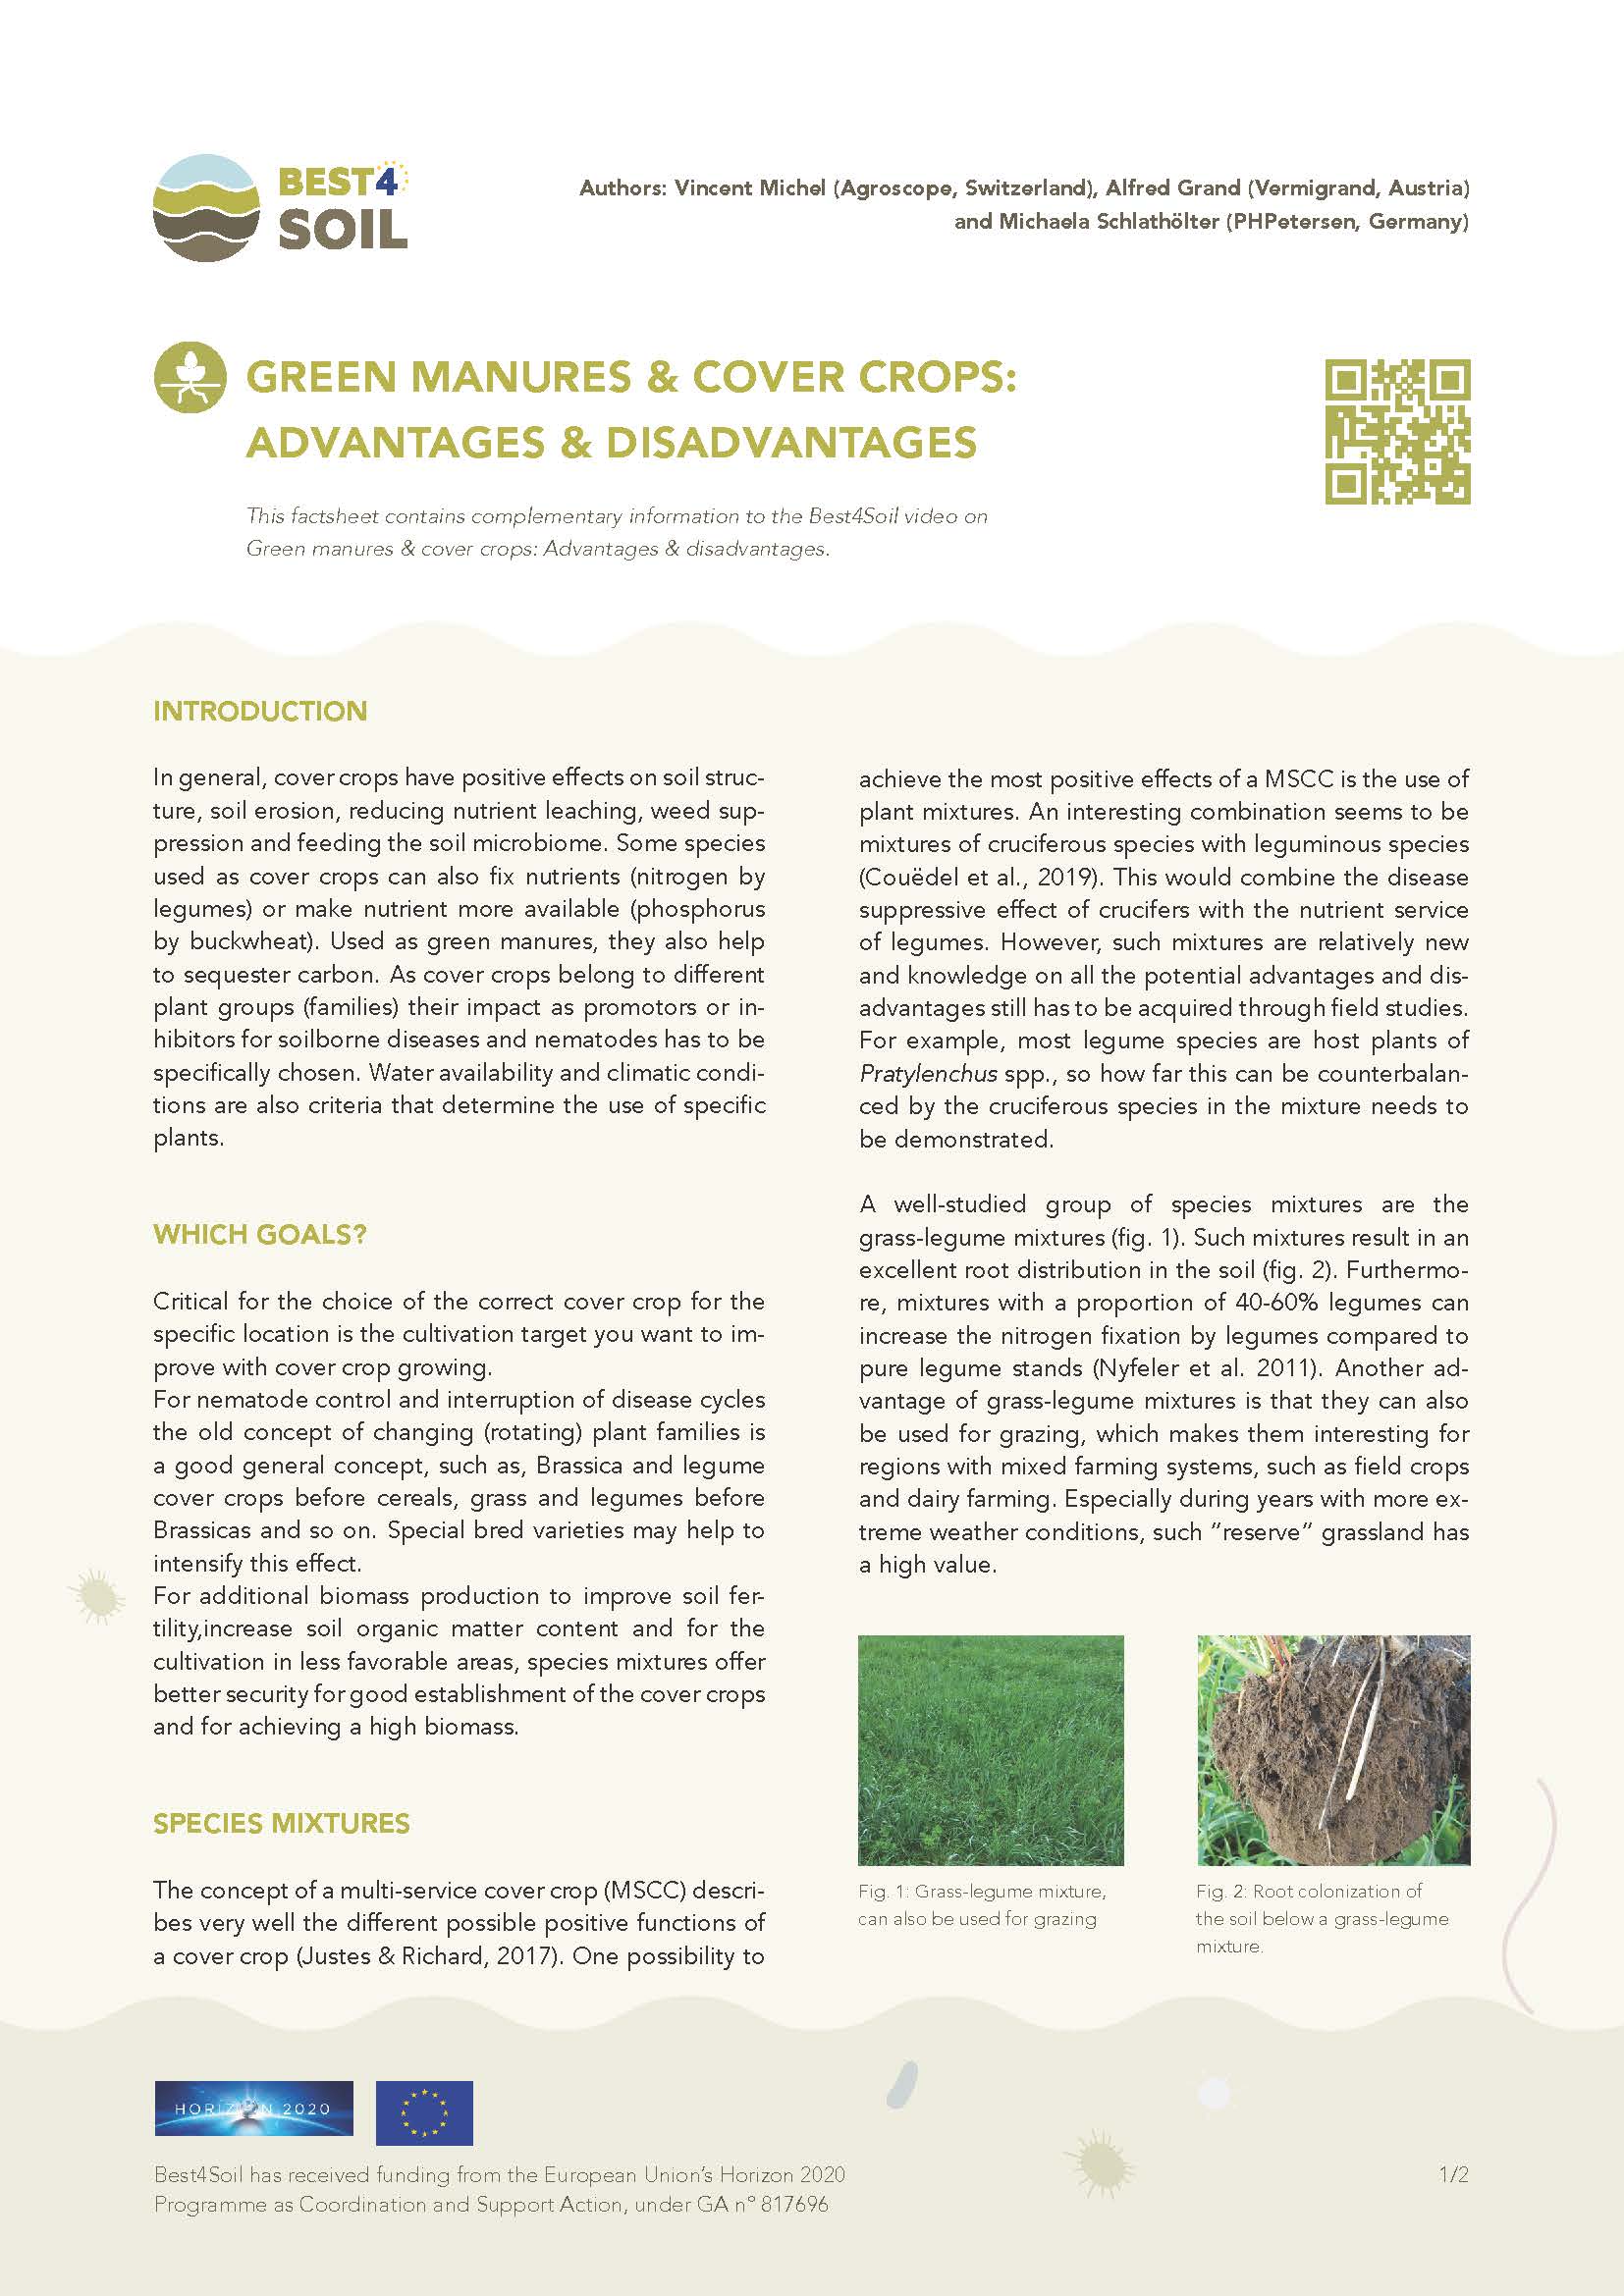 Engrais verts et cultures de couverture : avantages et inconvénients (fiche d'information Best4Soil)